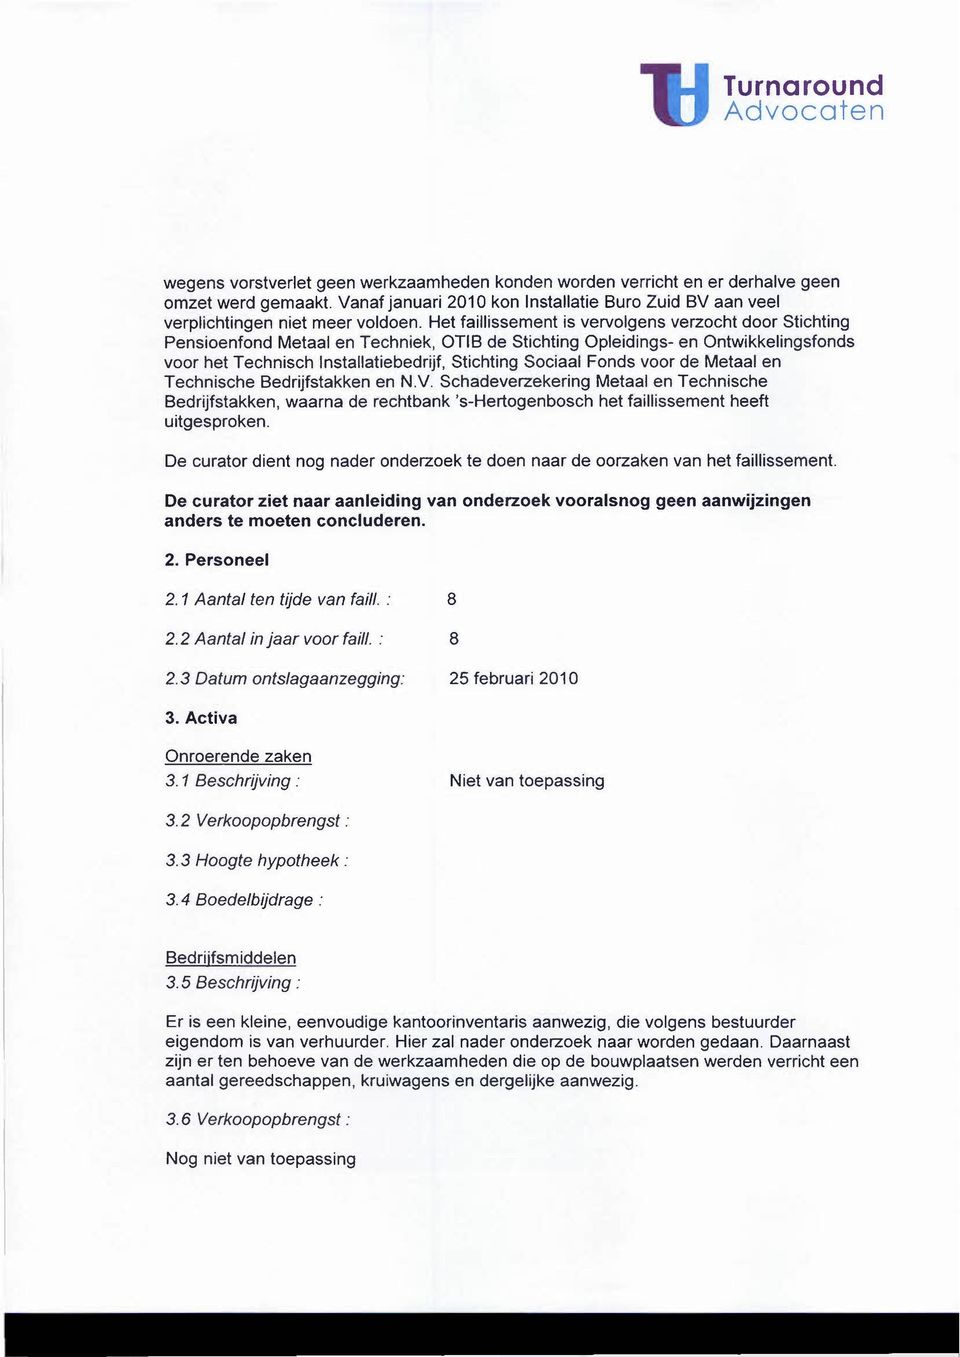 Fonds voor de Metaal en Technische Bedrijfstakken en N.v. Schadeverzekering Metaal en Technische Bedrijfstakken, waarna de rechtbank 's-hertogenbosch het faillissement heeft uitgesproken.